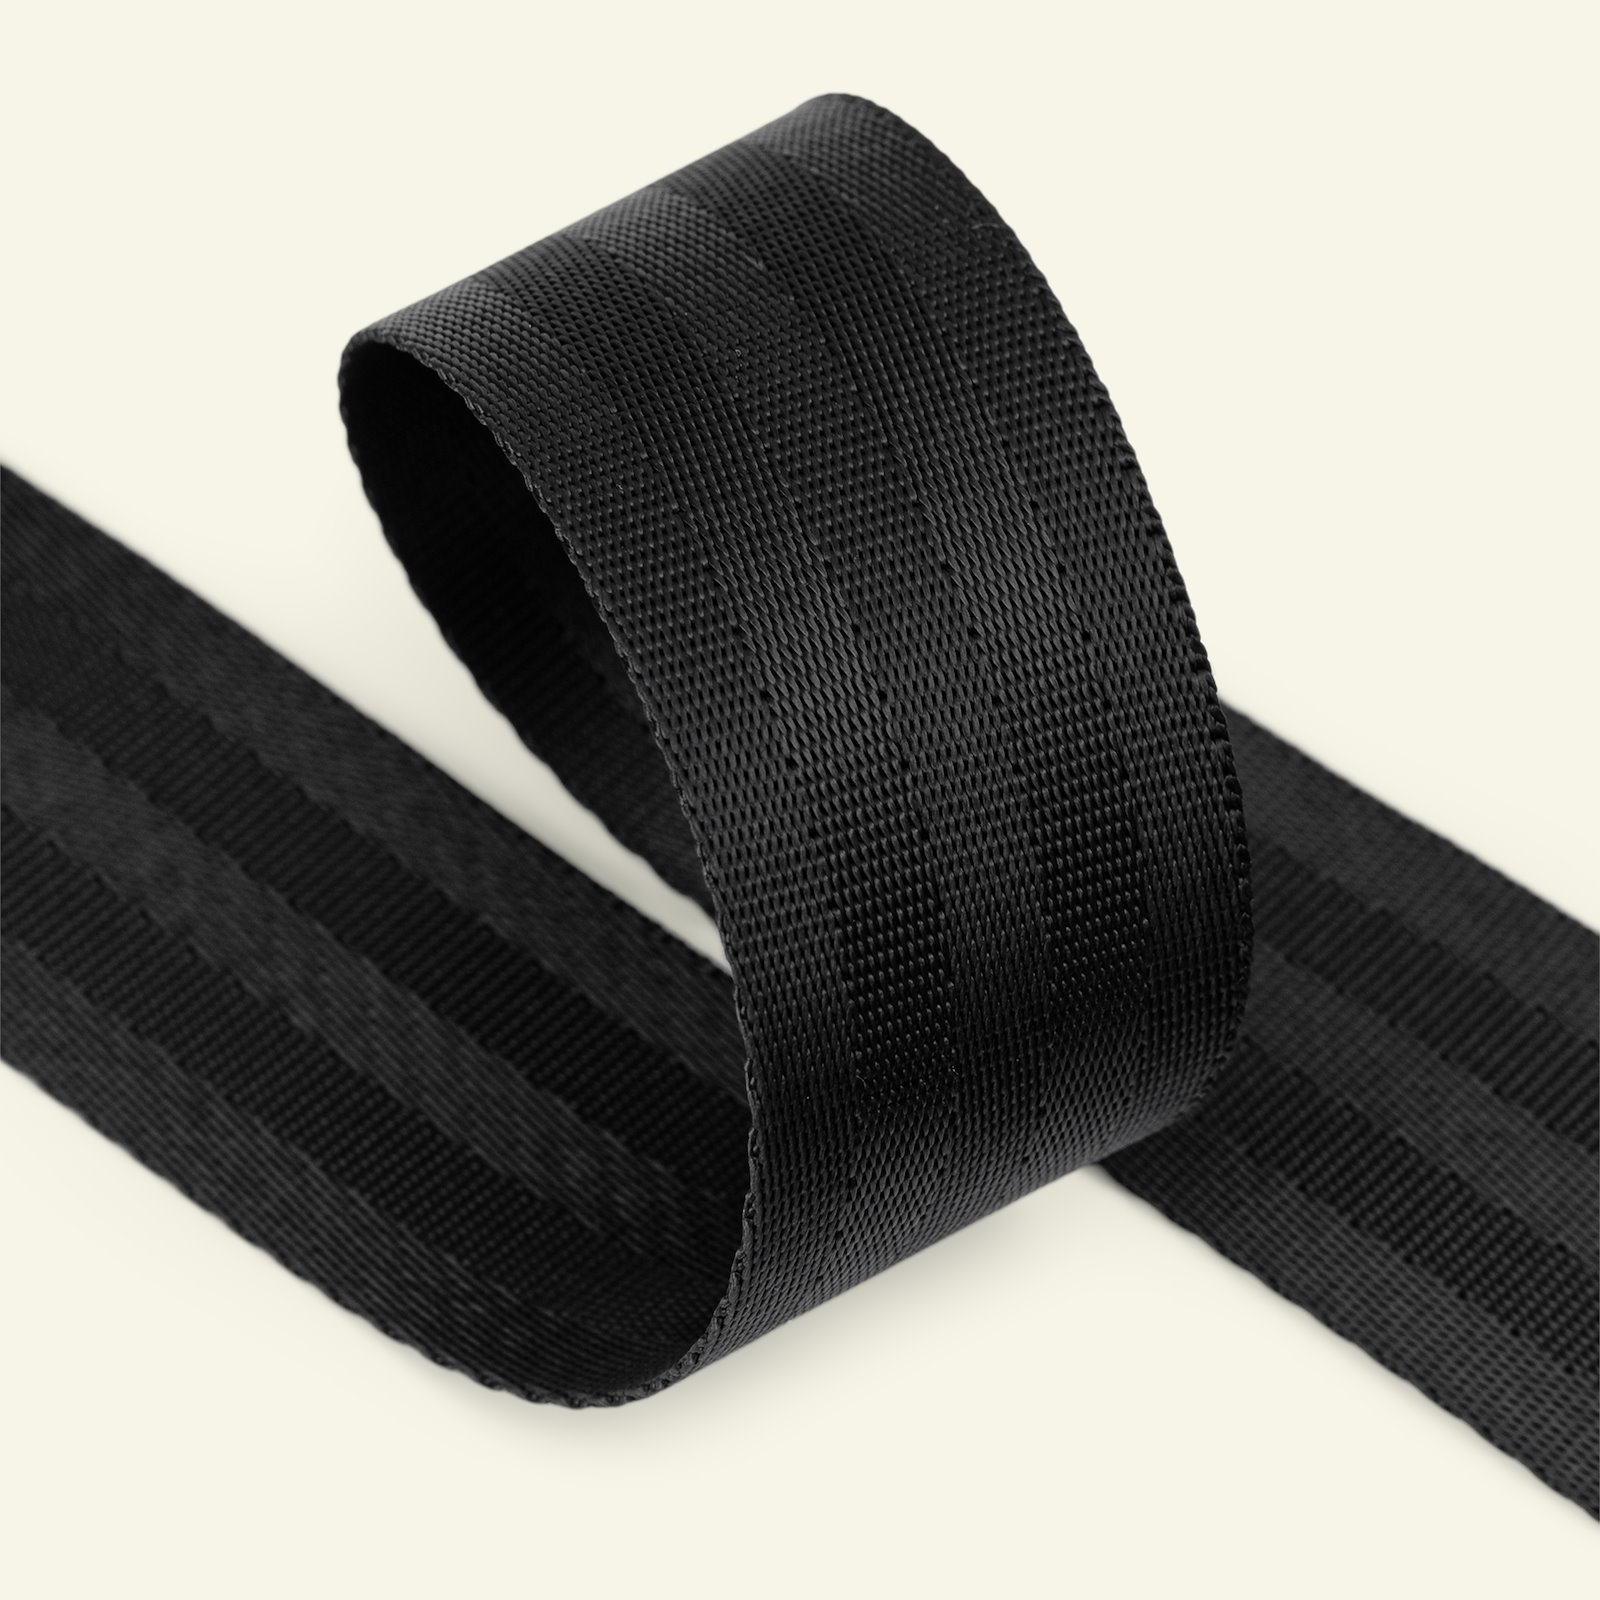 Ribbon woven nylon 38mm black 4m 80162_pack